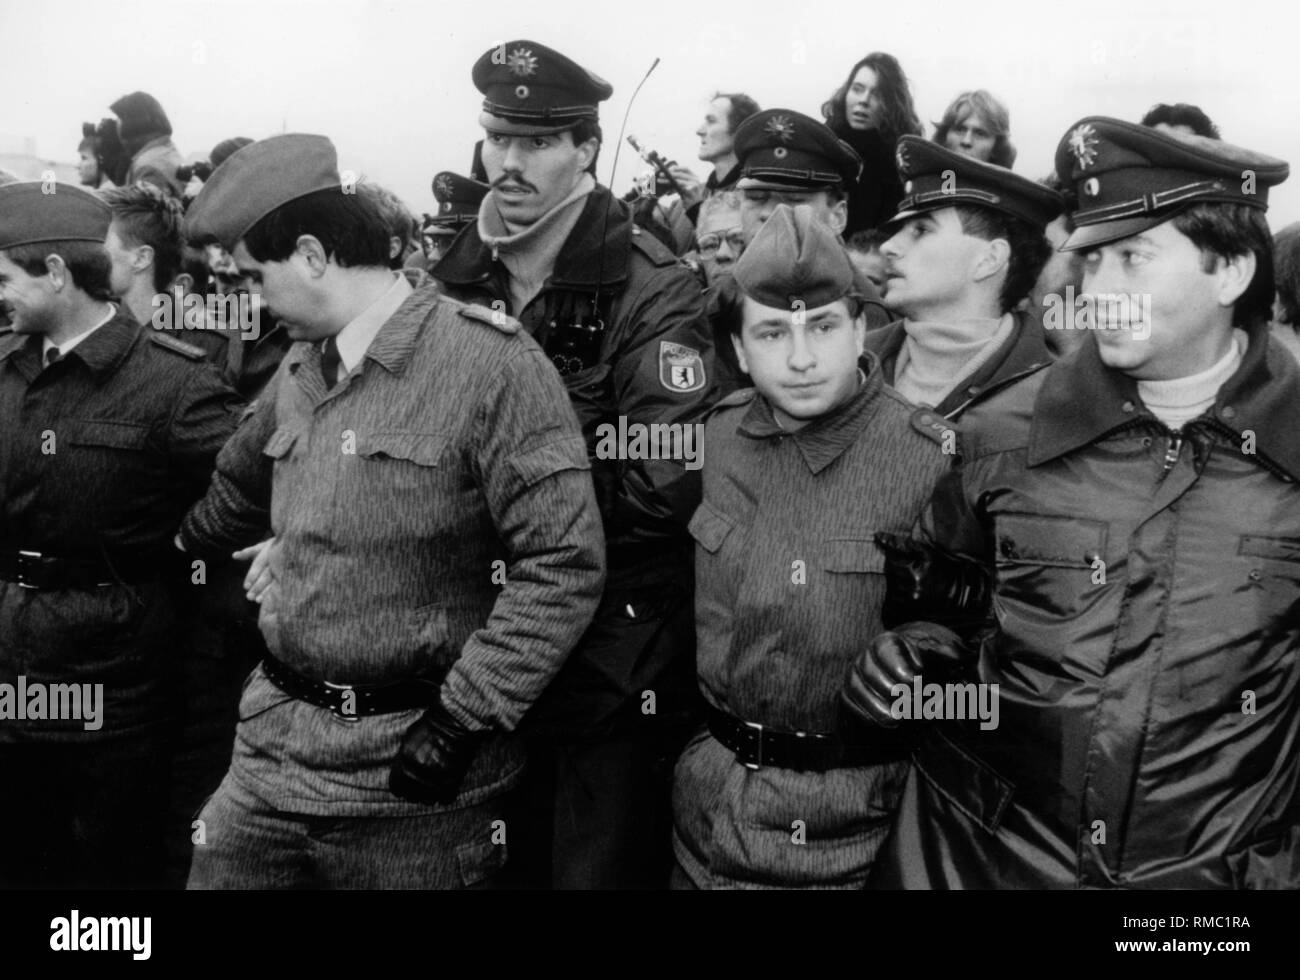 Eine Gruppe von Grenzsoldaten der DDR und Mitglieder der West-Berliner Polizei zusammen kommen nach dem Fall der Mauer. Stockfoto